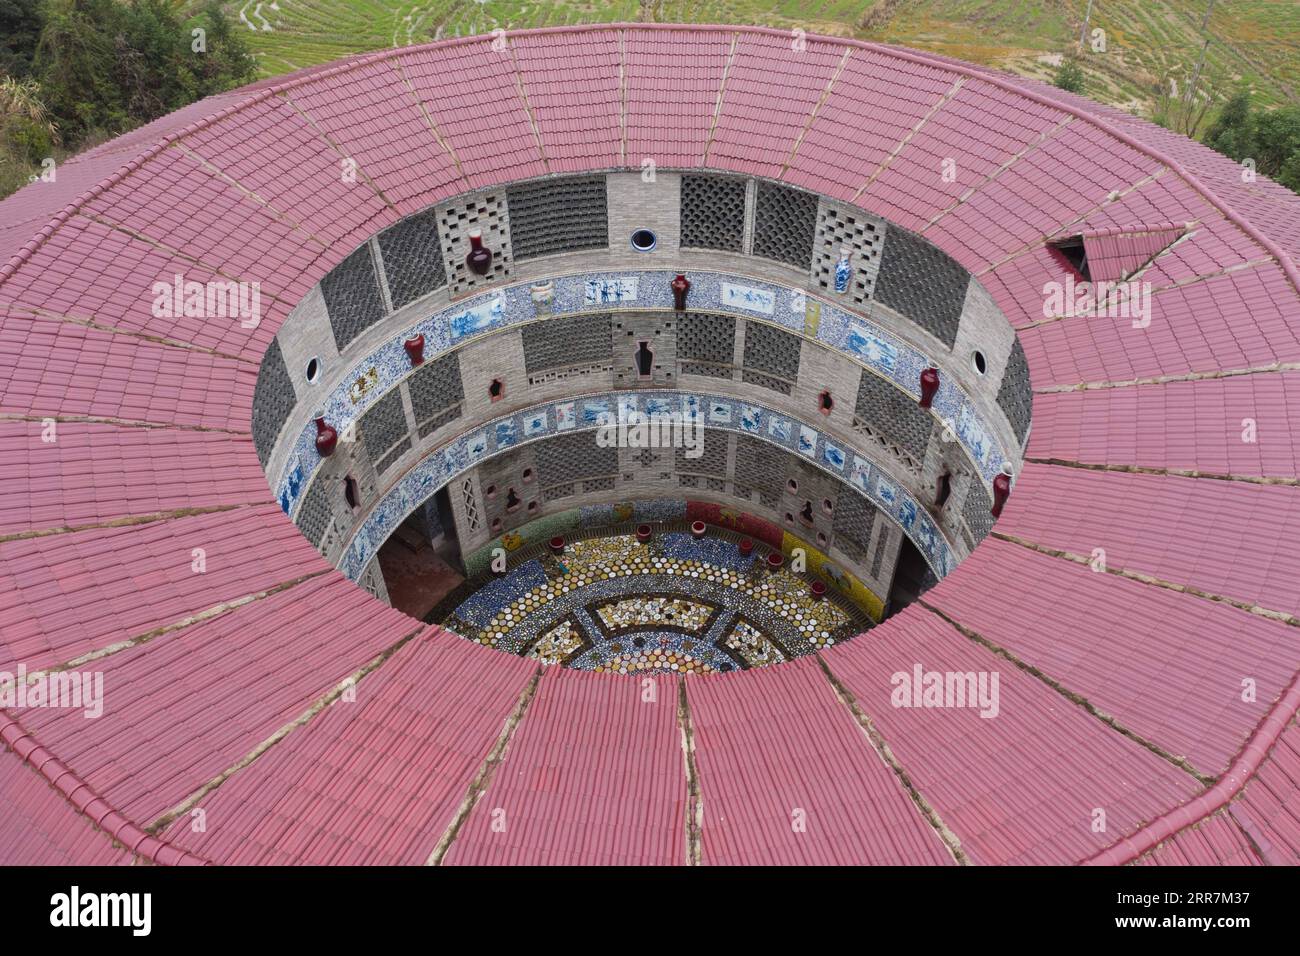 210331 -- NANCHANG, le 31 mars 2021 -- une photo aérienne prise le 20 mars 2021 montre une vue d'un palais de porcelaine dans le village de Xinping du comté de Fuliang à Jingdezhen, province du Jiangxi dans l'est de la Chine. Yu Ermei, une villageoise de 91 ans qui travaillait autrefois dans une manufacture de porcelaine, a commencé à construire ses palais de porcelaine dans le village de Xinping à partir de 2011. Grâce à ses efforts, quatre bâtiments décorés de porcelaine et de pièces de porcelaine se dressent maintenant dans le village, attirant de nombreux touristes à visiter. CHINE-JIANGXI-JINGDEZHEN-PORCELAINE PALACESCN ZhouxMi PUBLICATIONxNOTxINxCHN Banque D'Images